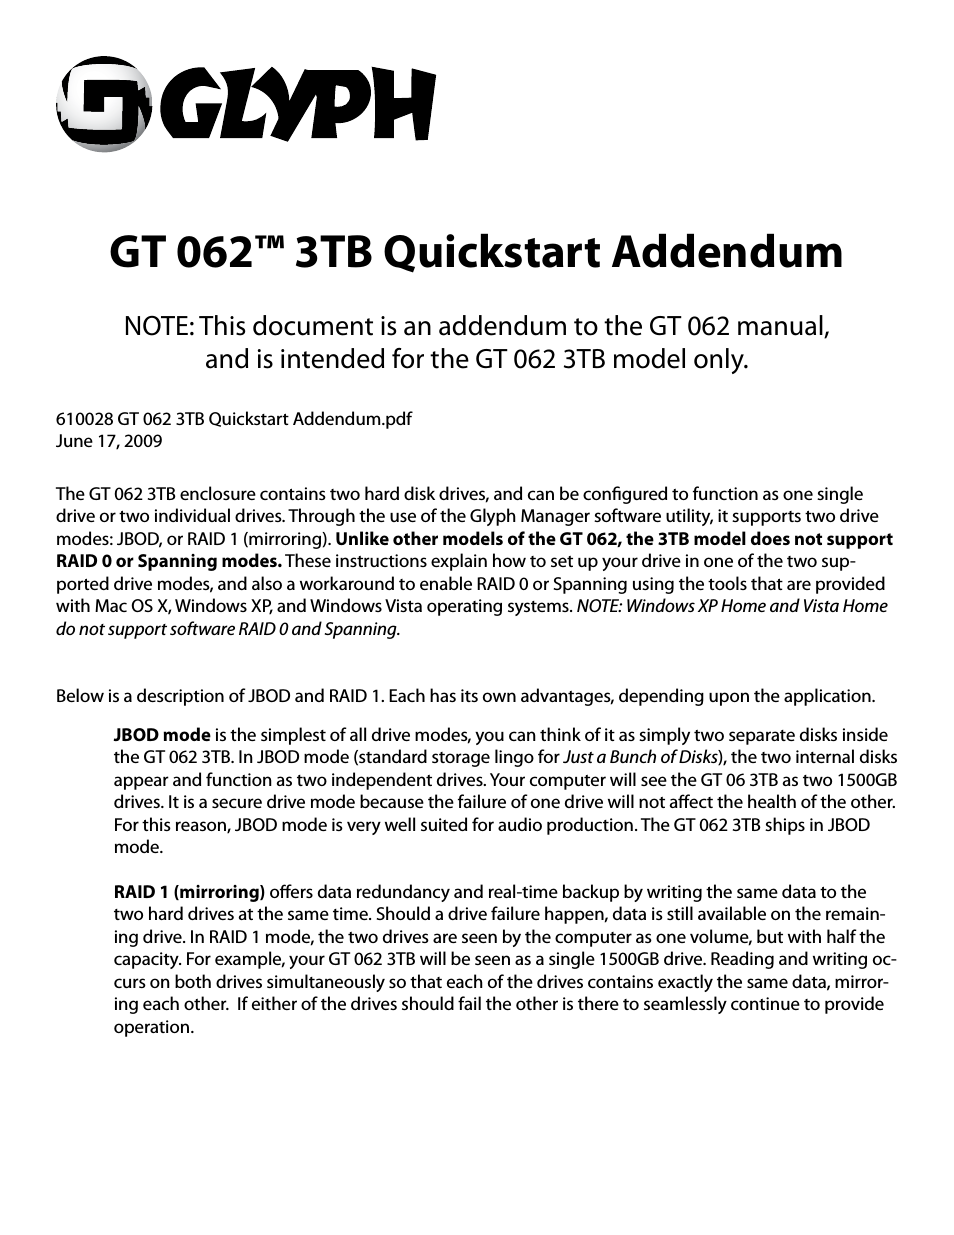 GT 062 3TB Addendum